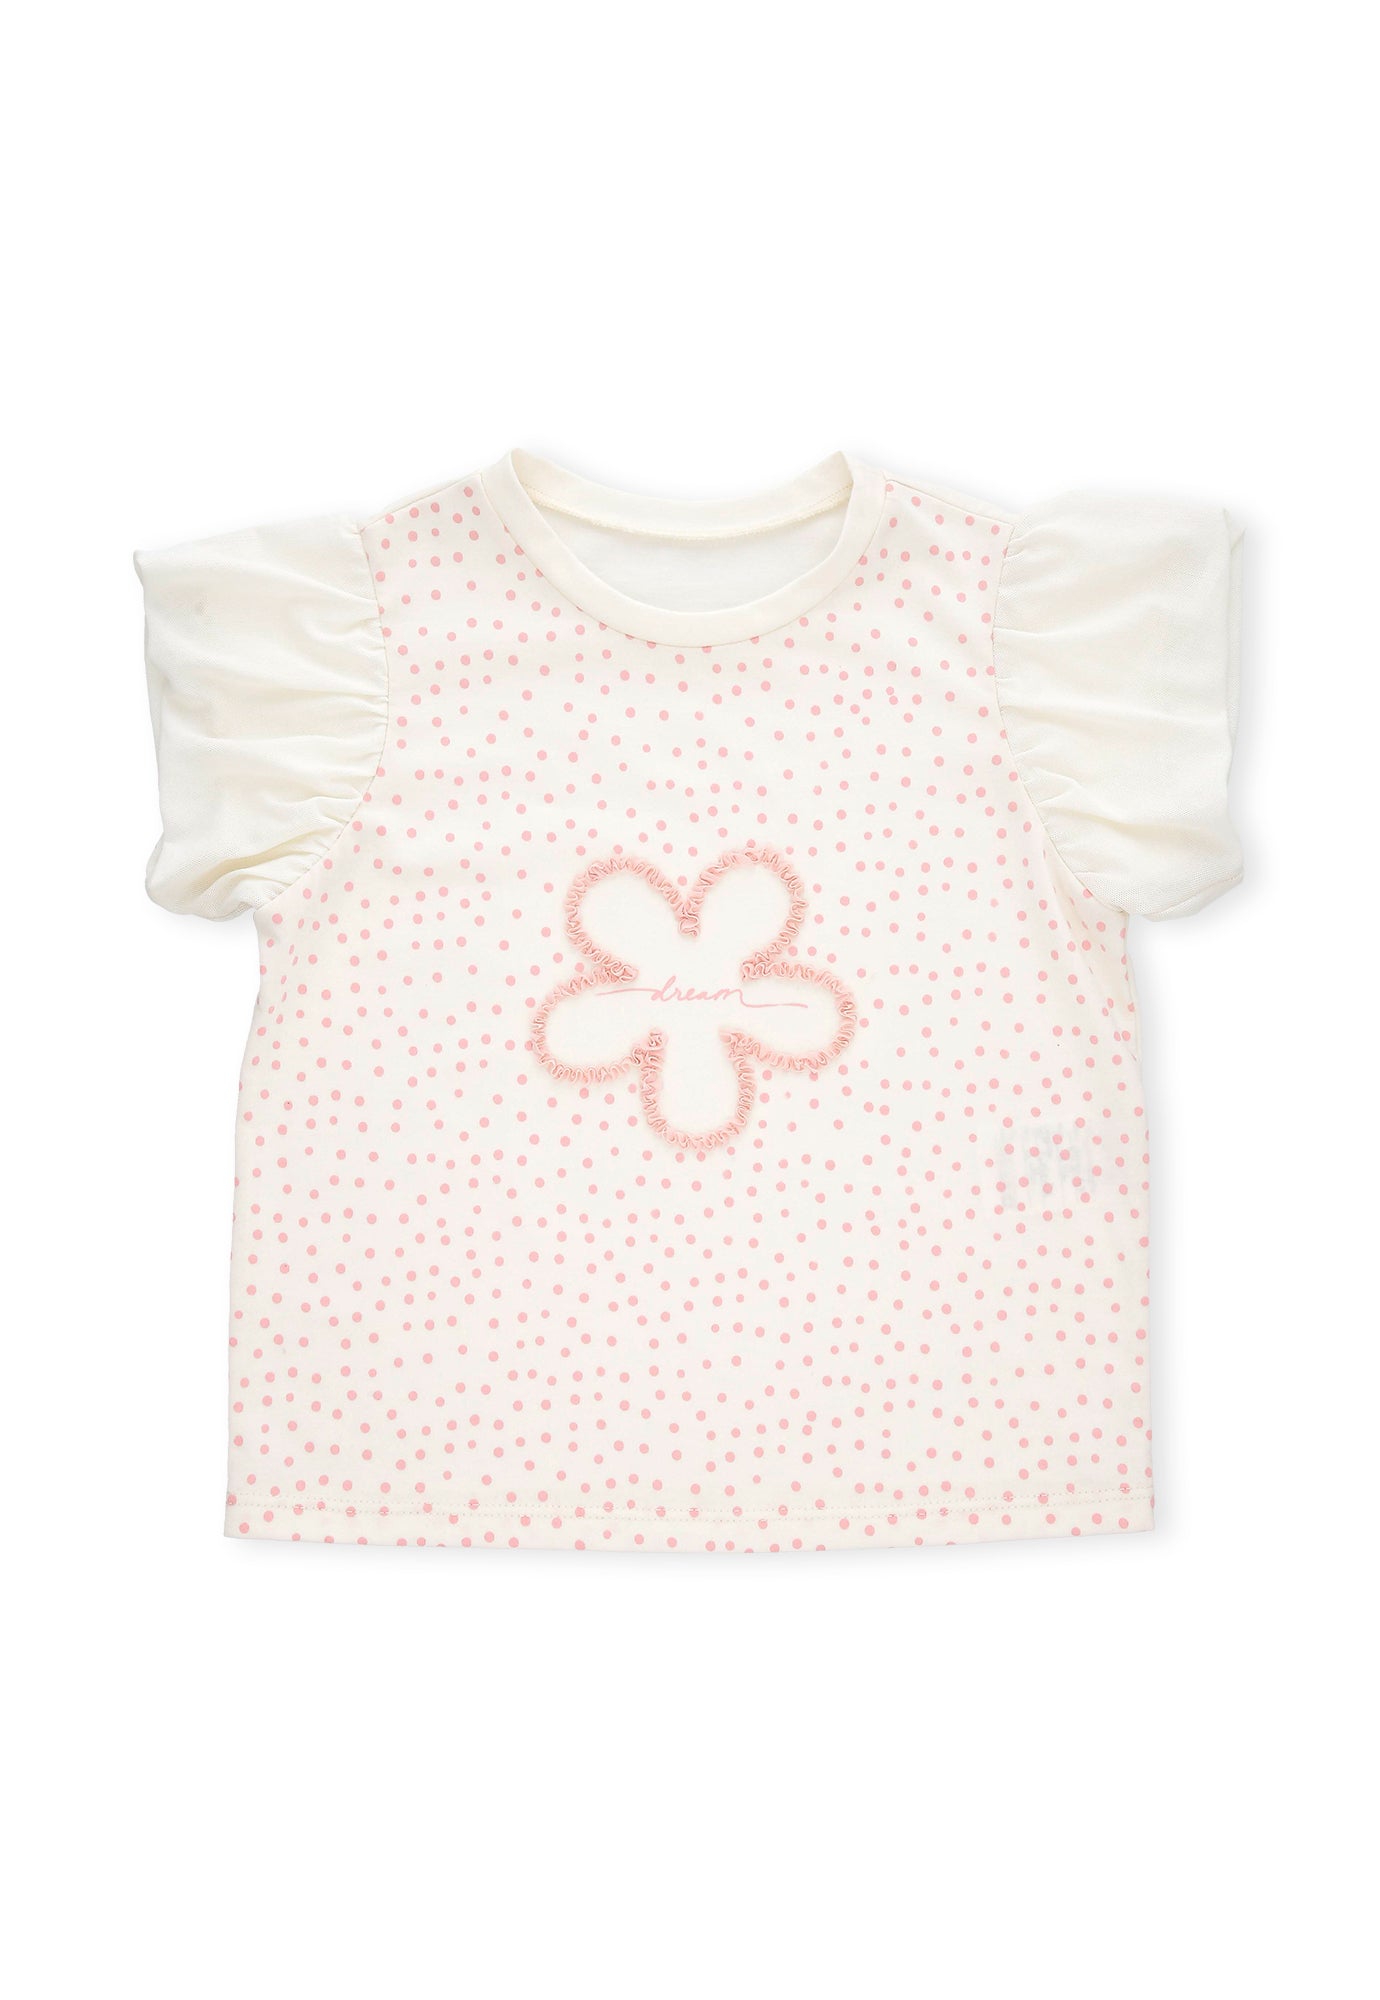 Camiseta ivory con estampado frontal, manga corta en tull y cuello redondo para bebé niña